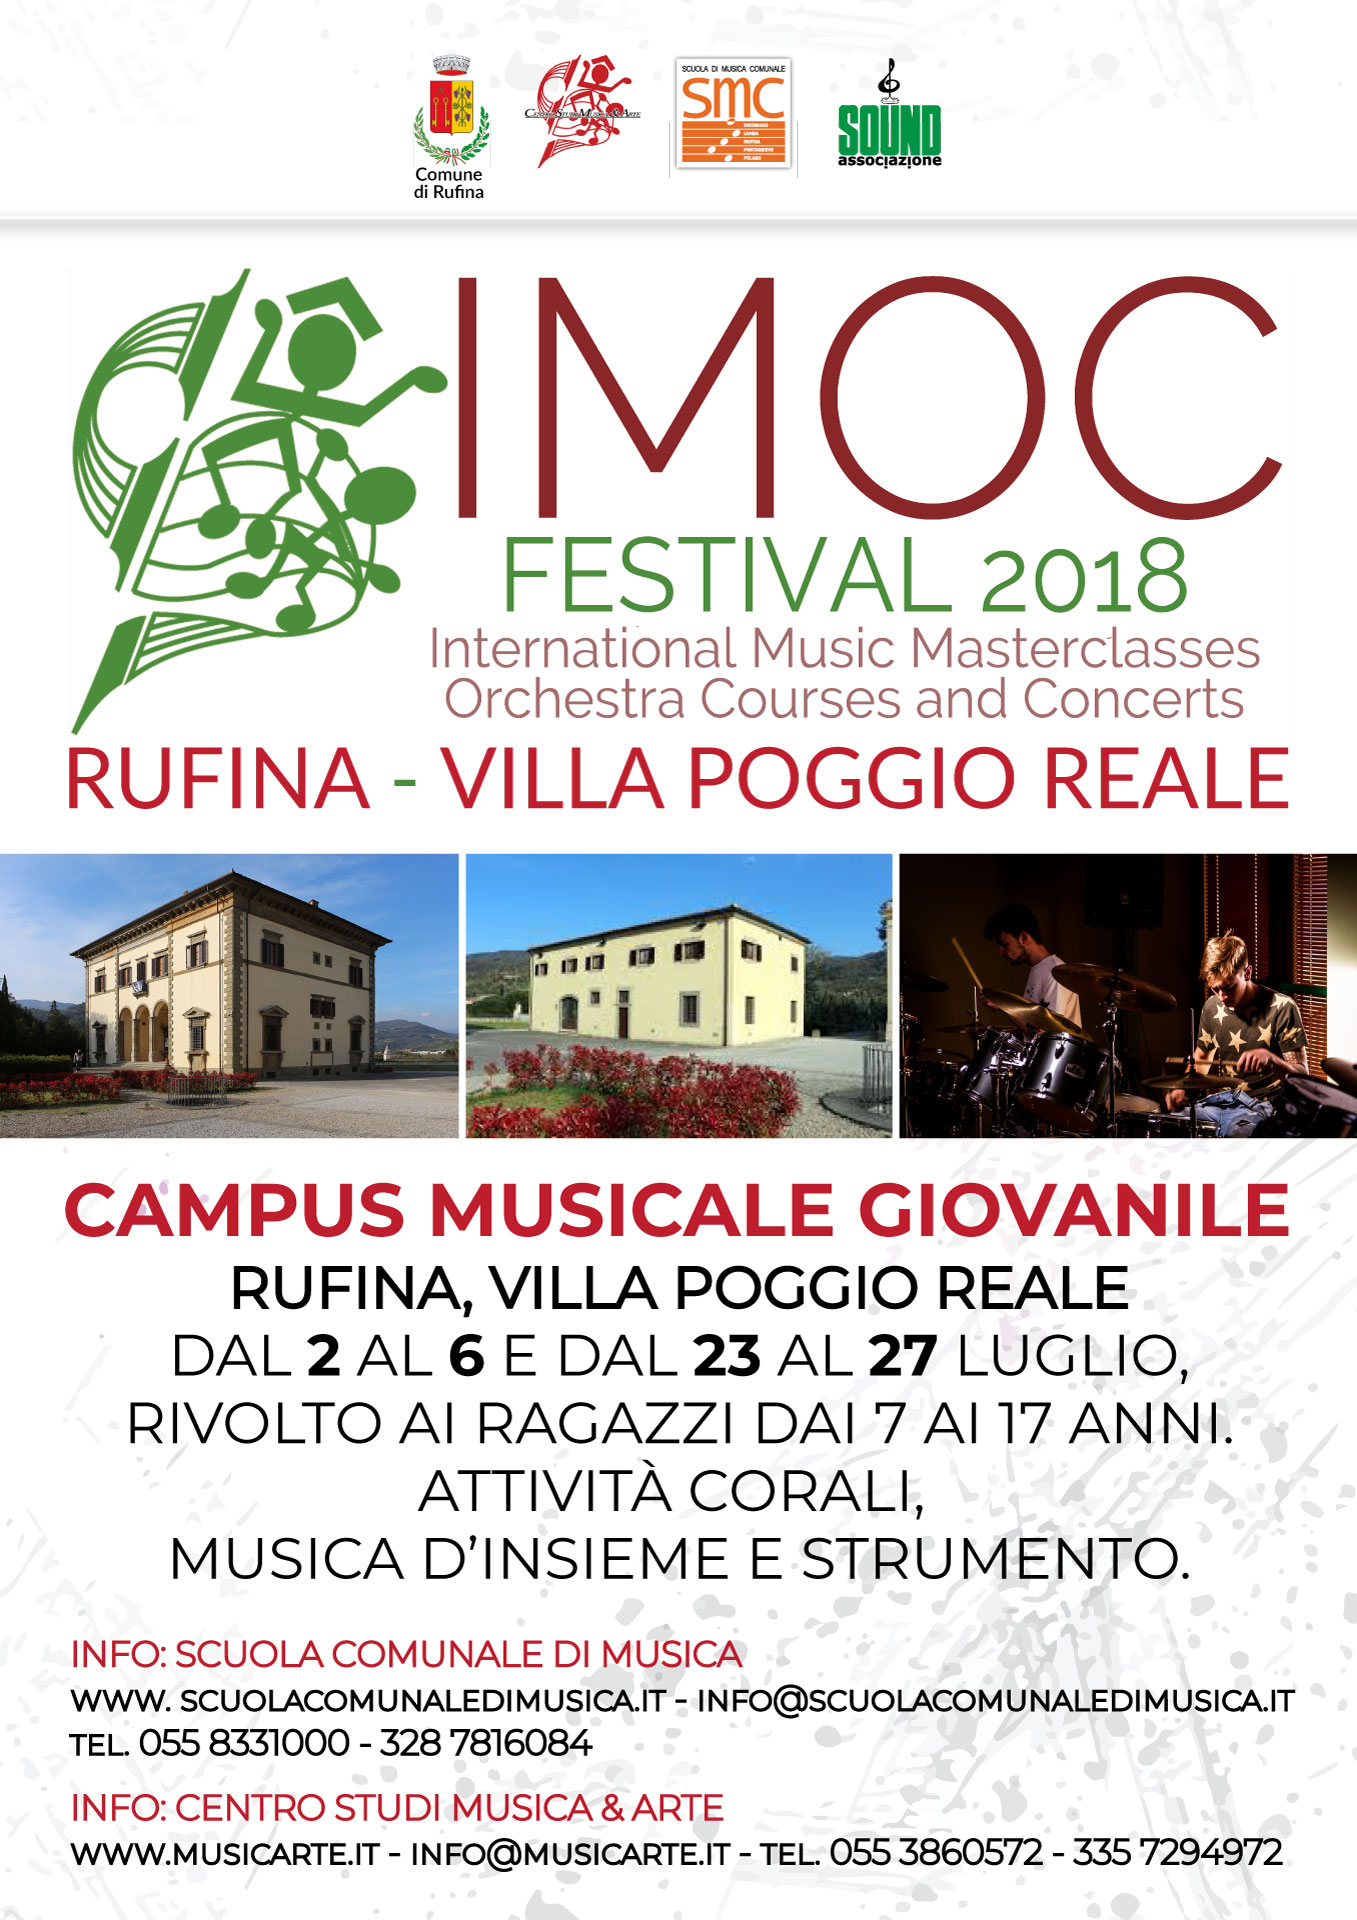 IMOC Festival 2018 – Rufina – Barberino di Mugello dal 2 al 6 Luglio dal 23 al 27